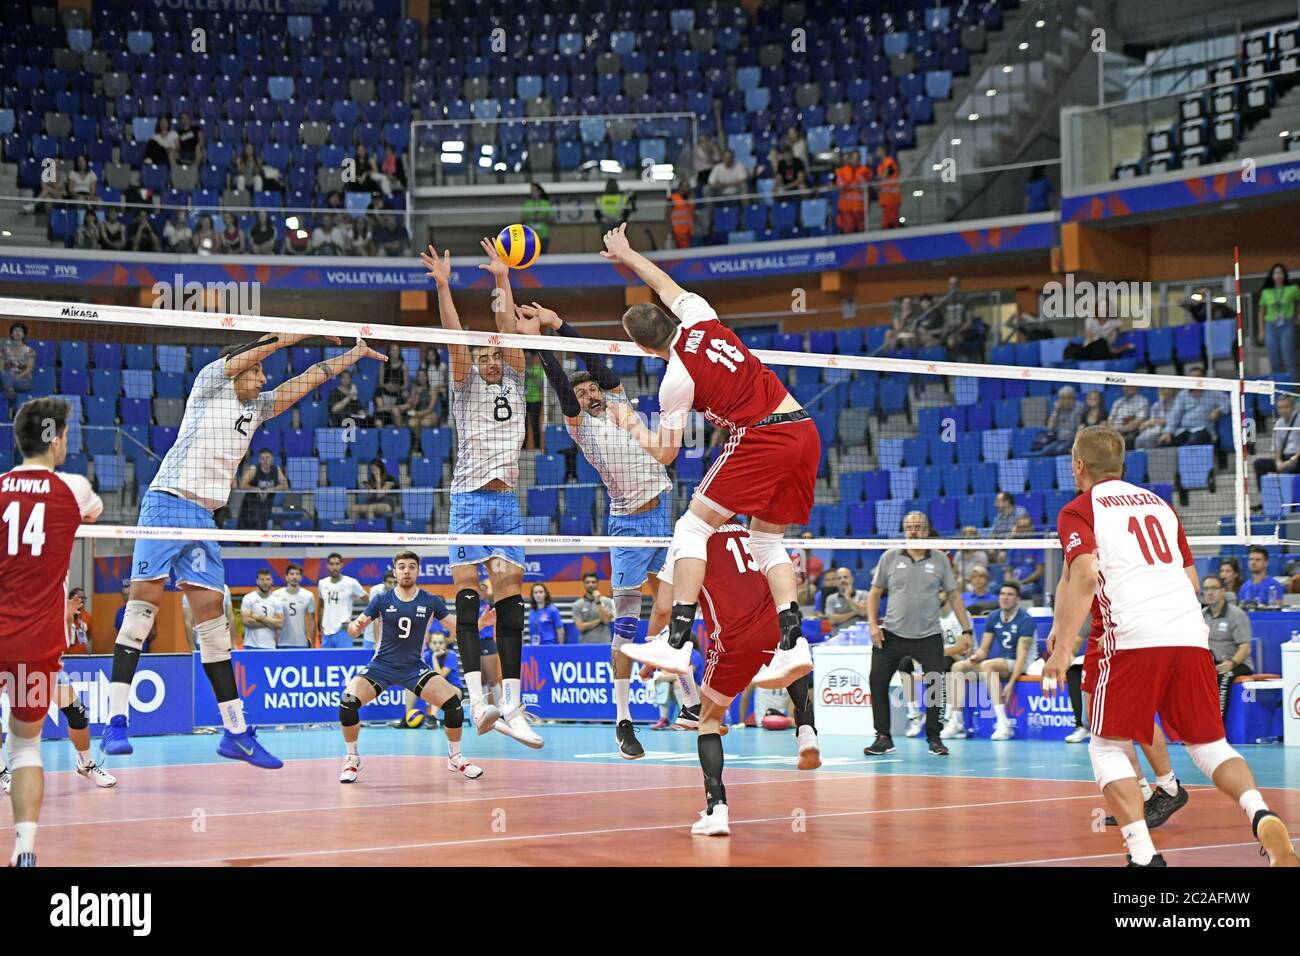 Hallenvolleyballspieler in Aktion, während des internationalen Spiels der Volleyball Nations League, Polen gegen Argentinien, in Mailand. Stockfoto